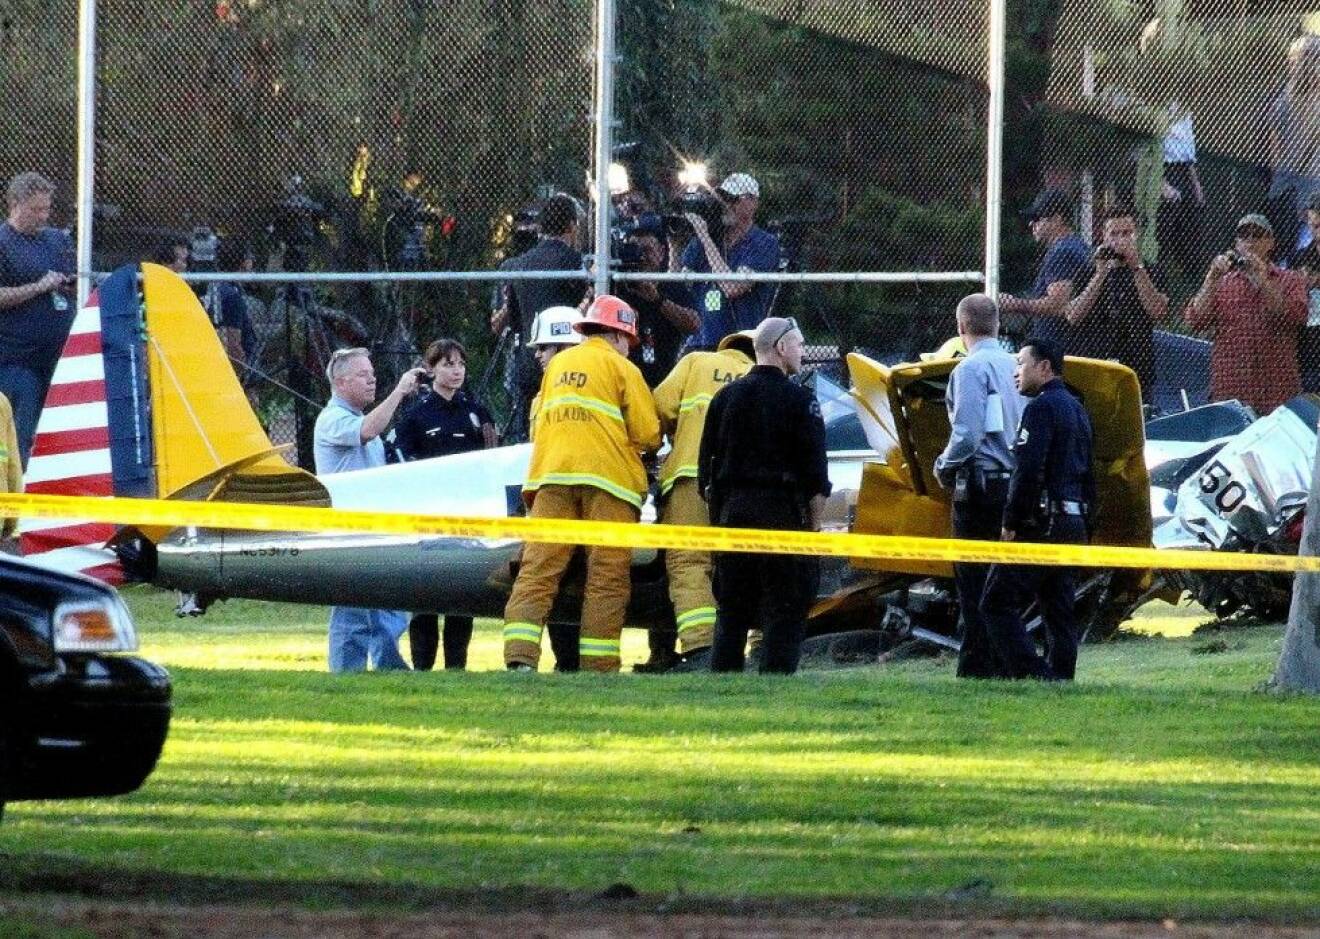 Räddningstjänsten var snabbt framme efter Harrison Fords krasch. Foto: All Over press